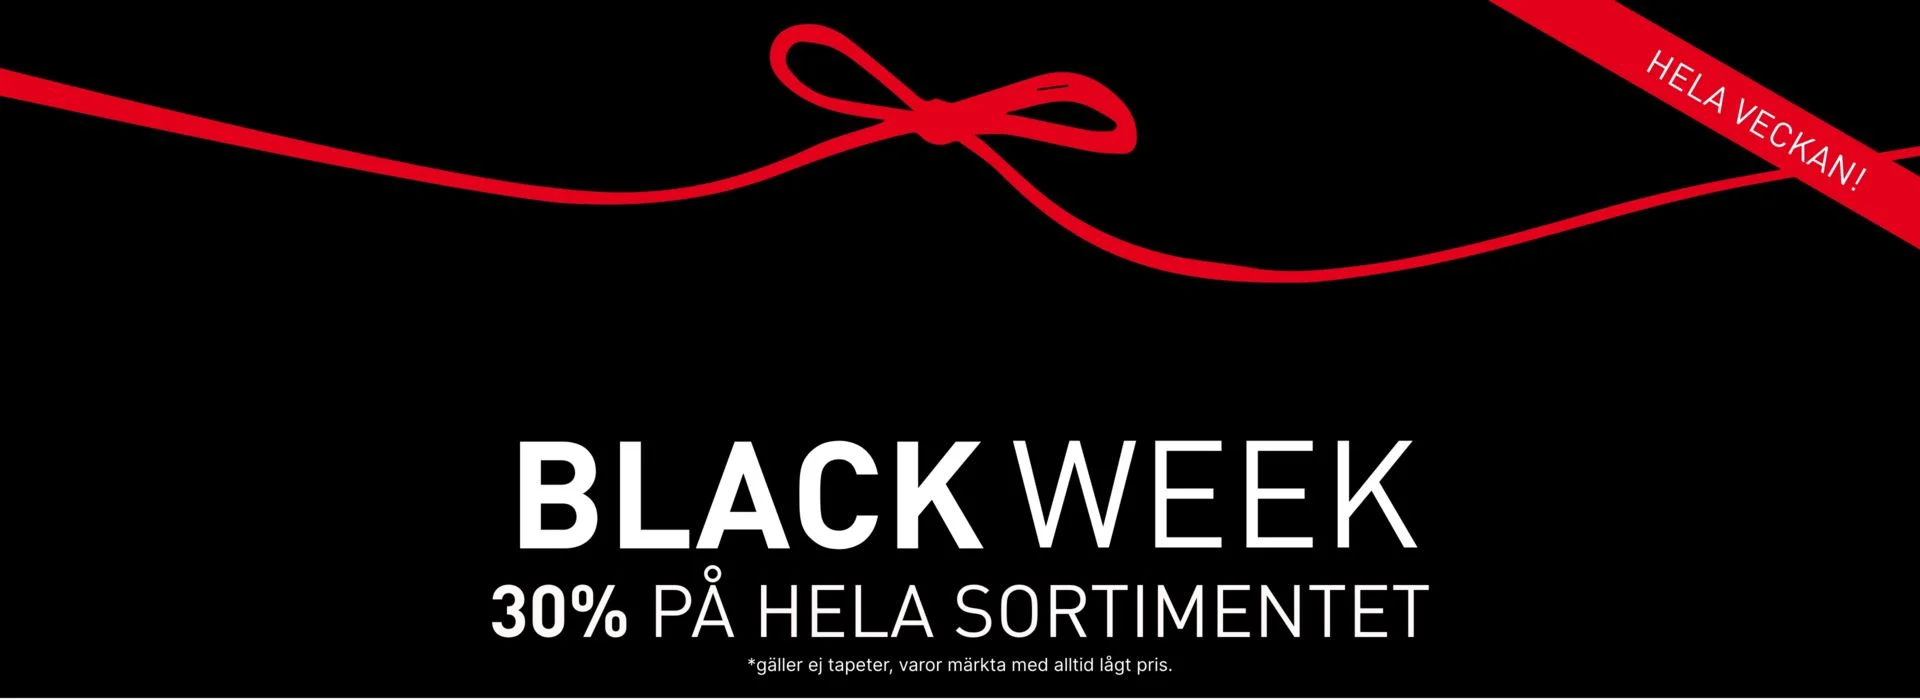 hemtex black week